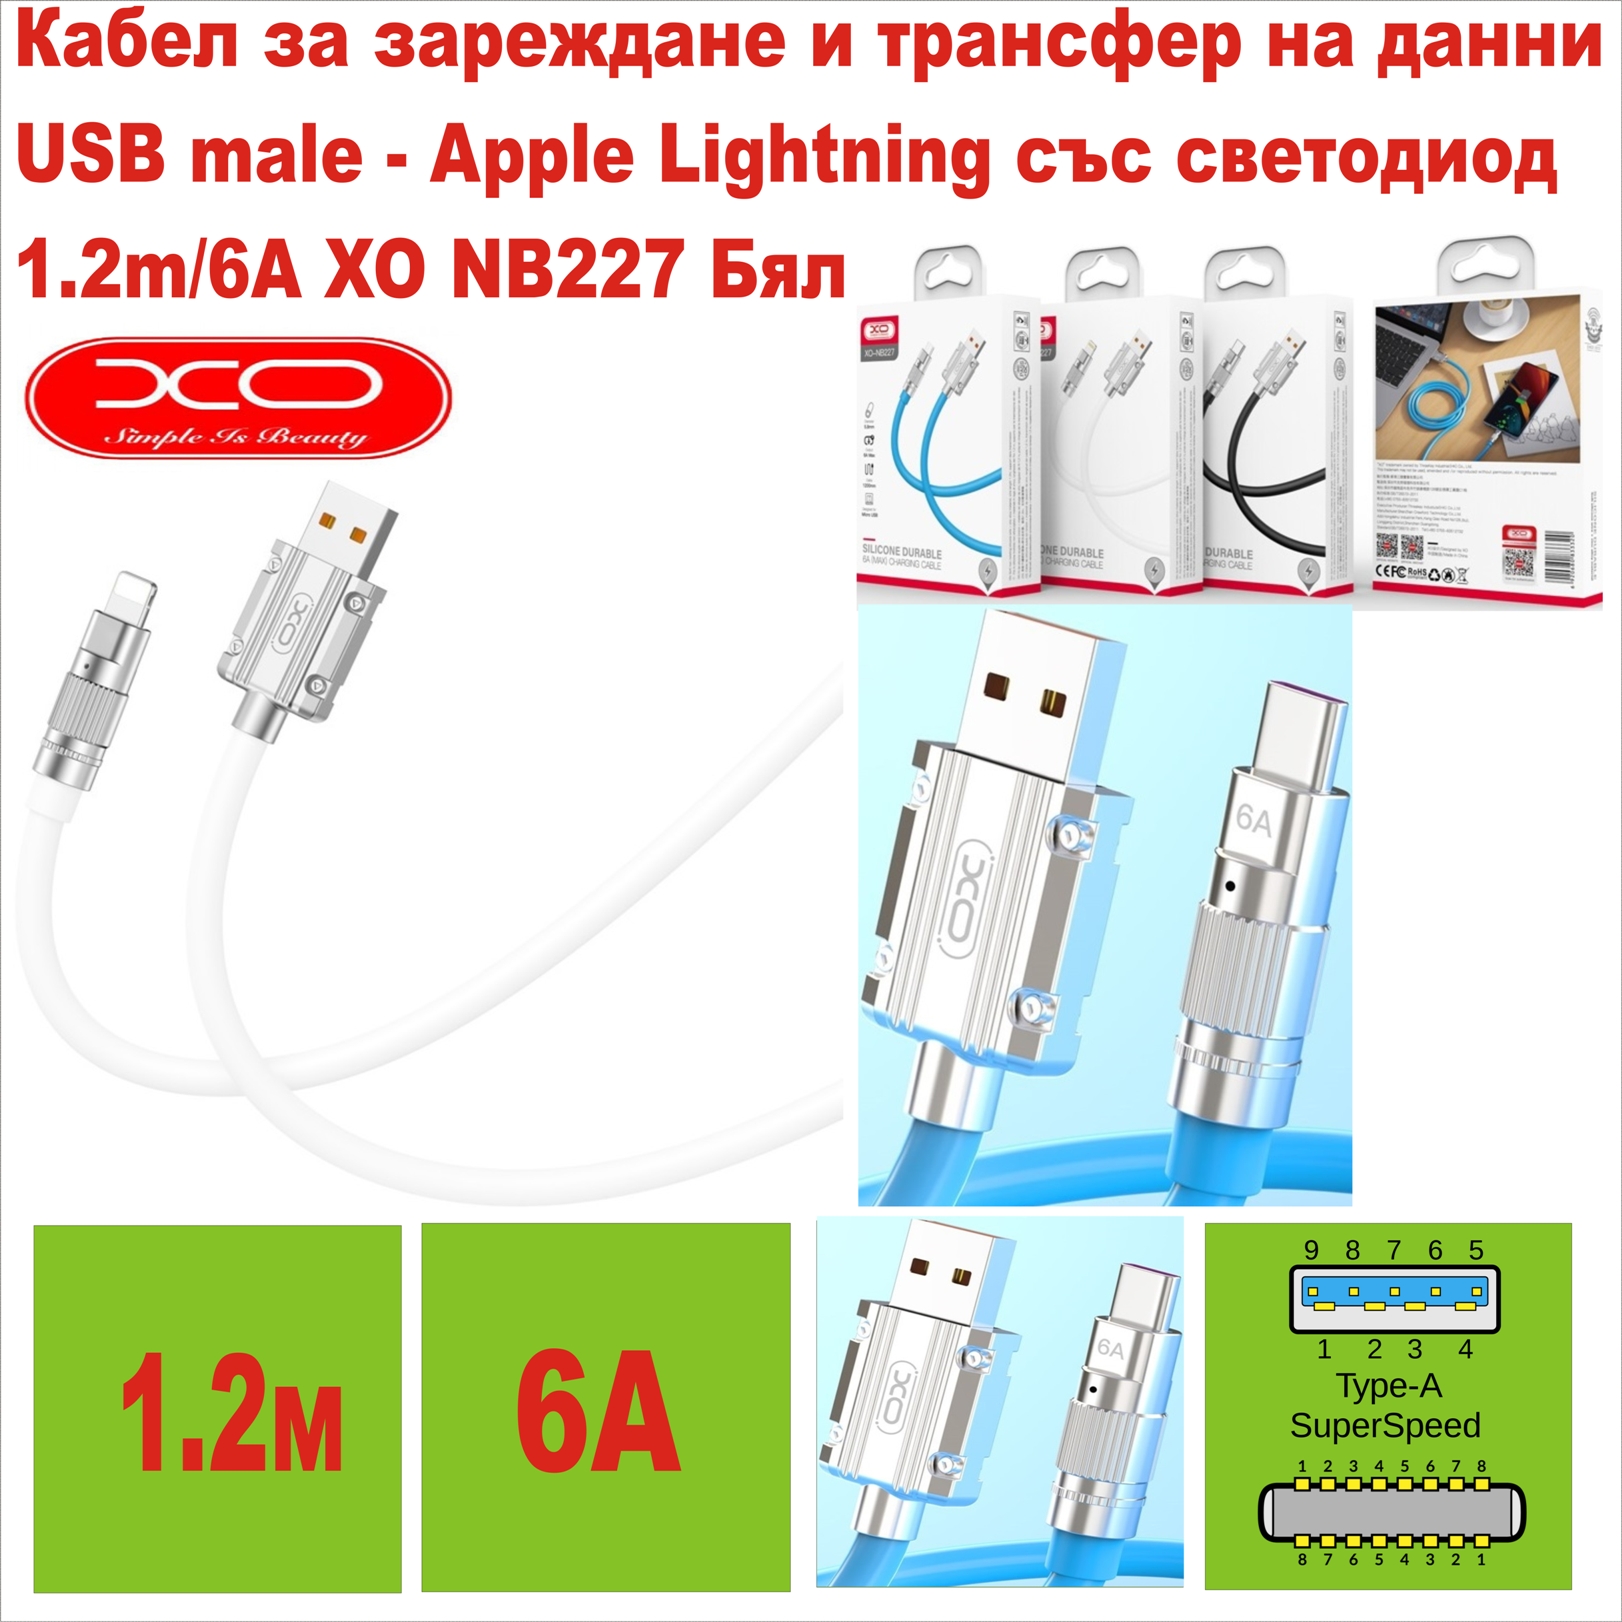 USB male - Apple Lightning 1.2m/6А XO NB227 whit